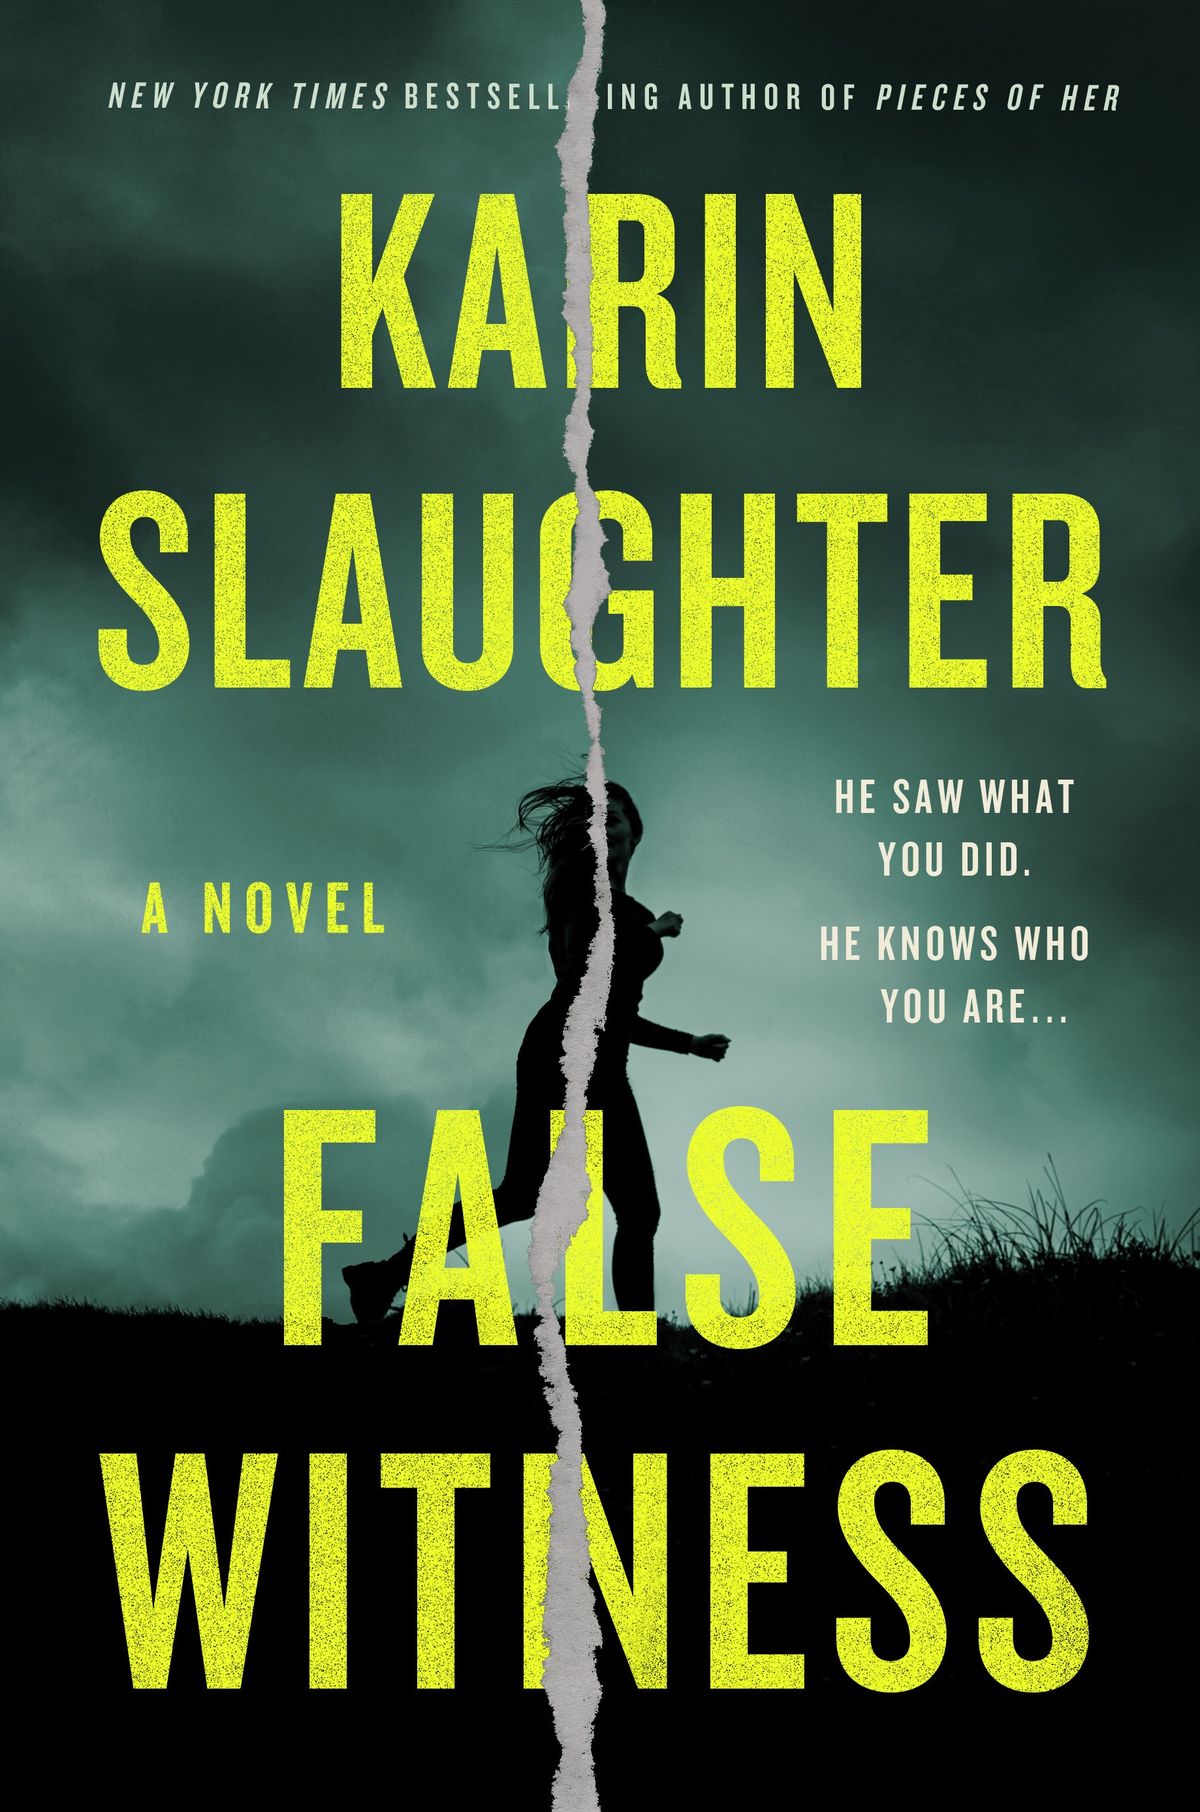 Morire per continuare il falso testimone di Karin Slaughter? Continua a leggere qui.